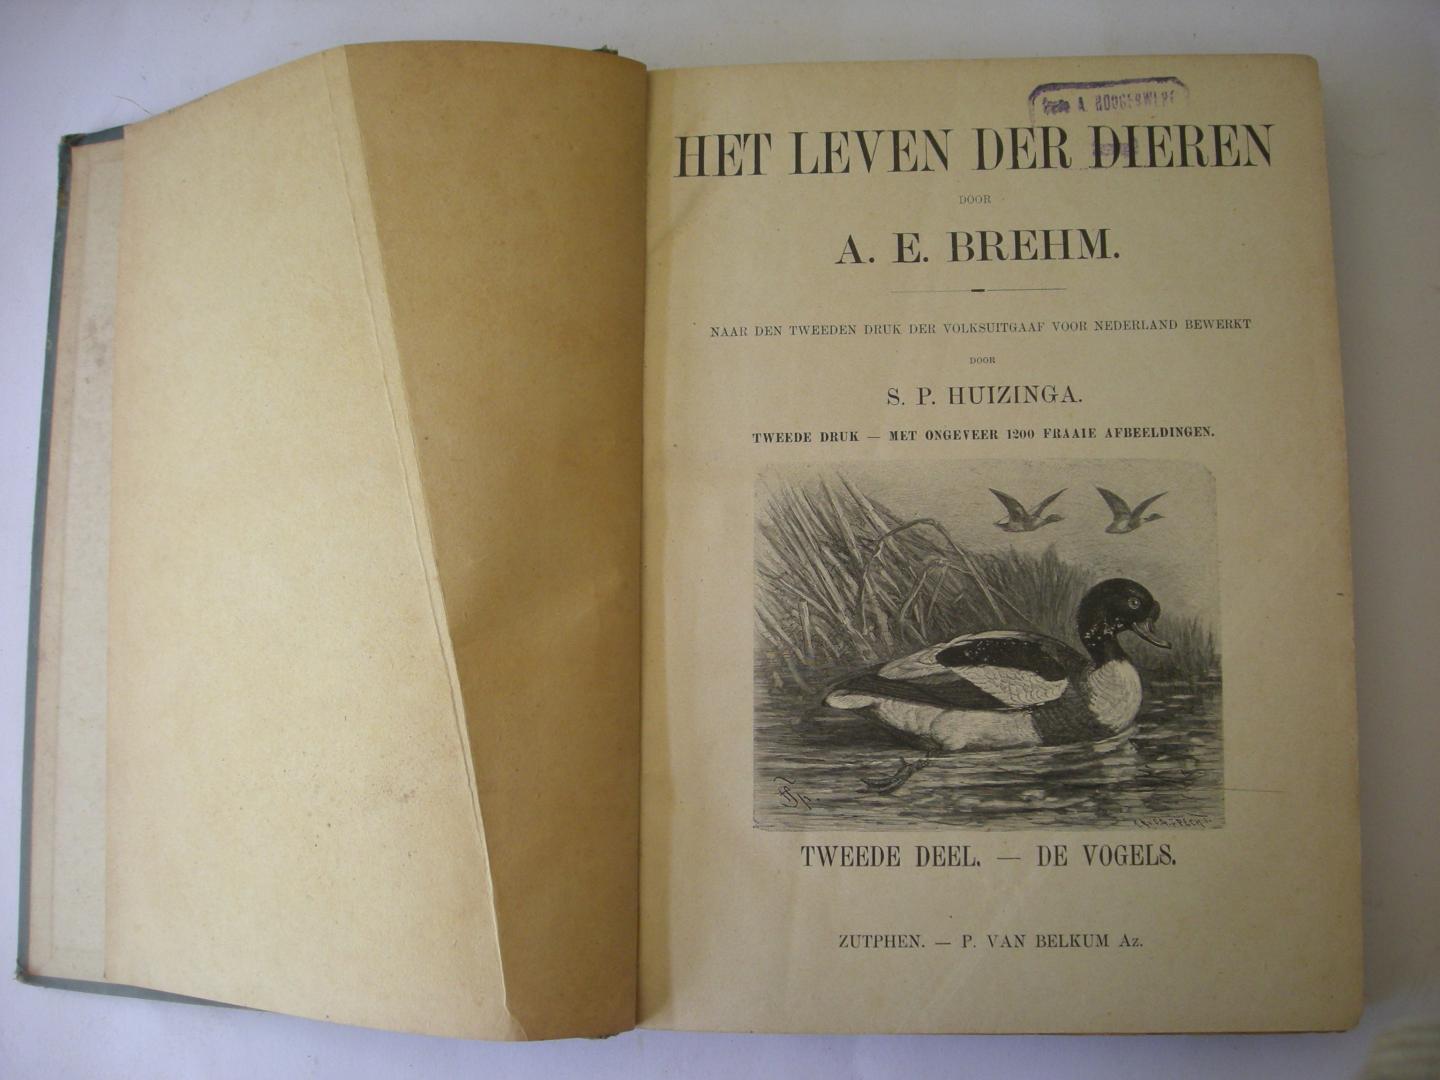 Brehm, A.E. / naar den tweeden druk der volksuitgaaf voor Nederland bewerkt door S.P.Huizinga - Het leven der dieren. Tweede deel - De vogels. met ongeveer 1200 fraaie afbeeldingen